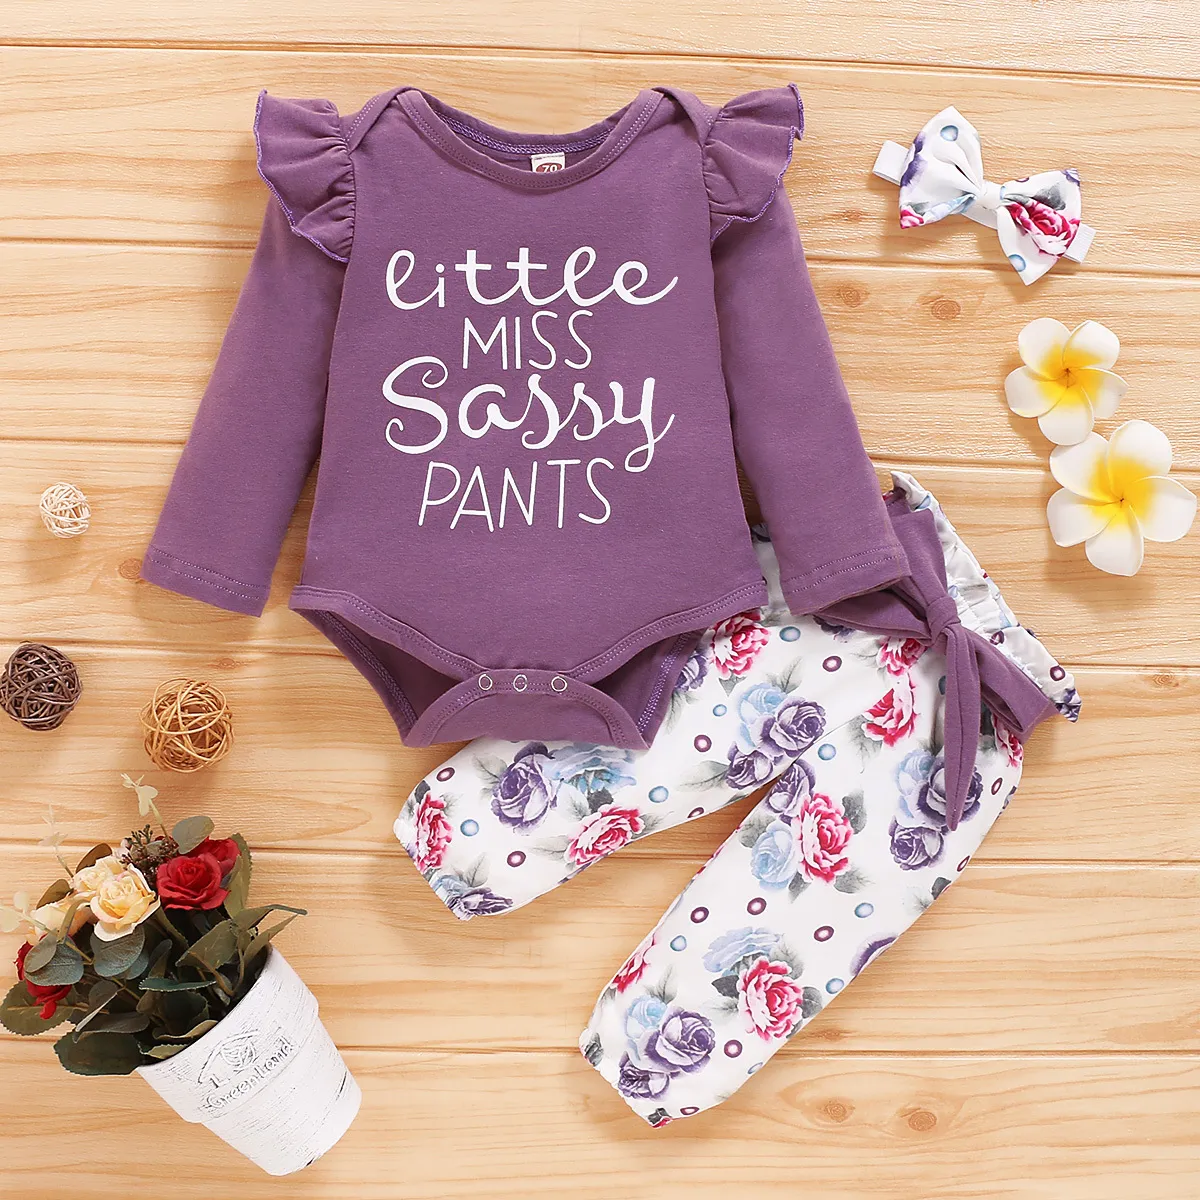 Baby Girls Одежда буквы с длинным рукавом комбинезон и цветок повязка длинные брюки с повязкой девочек детские одежды одежды наборы LJ201223